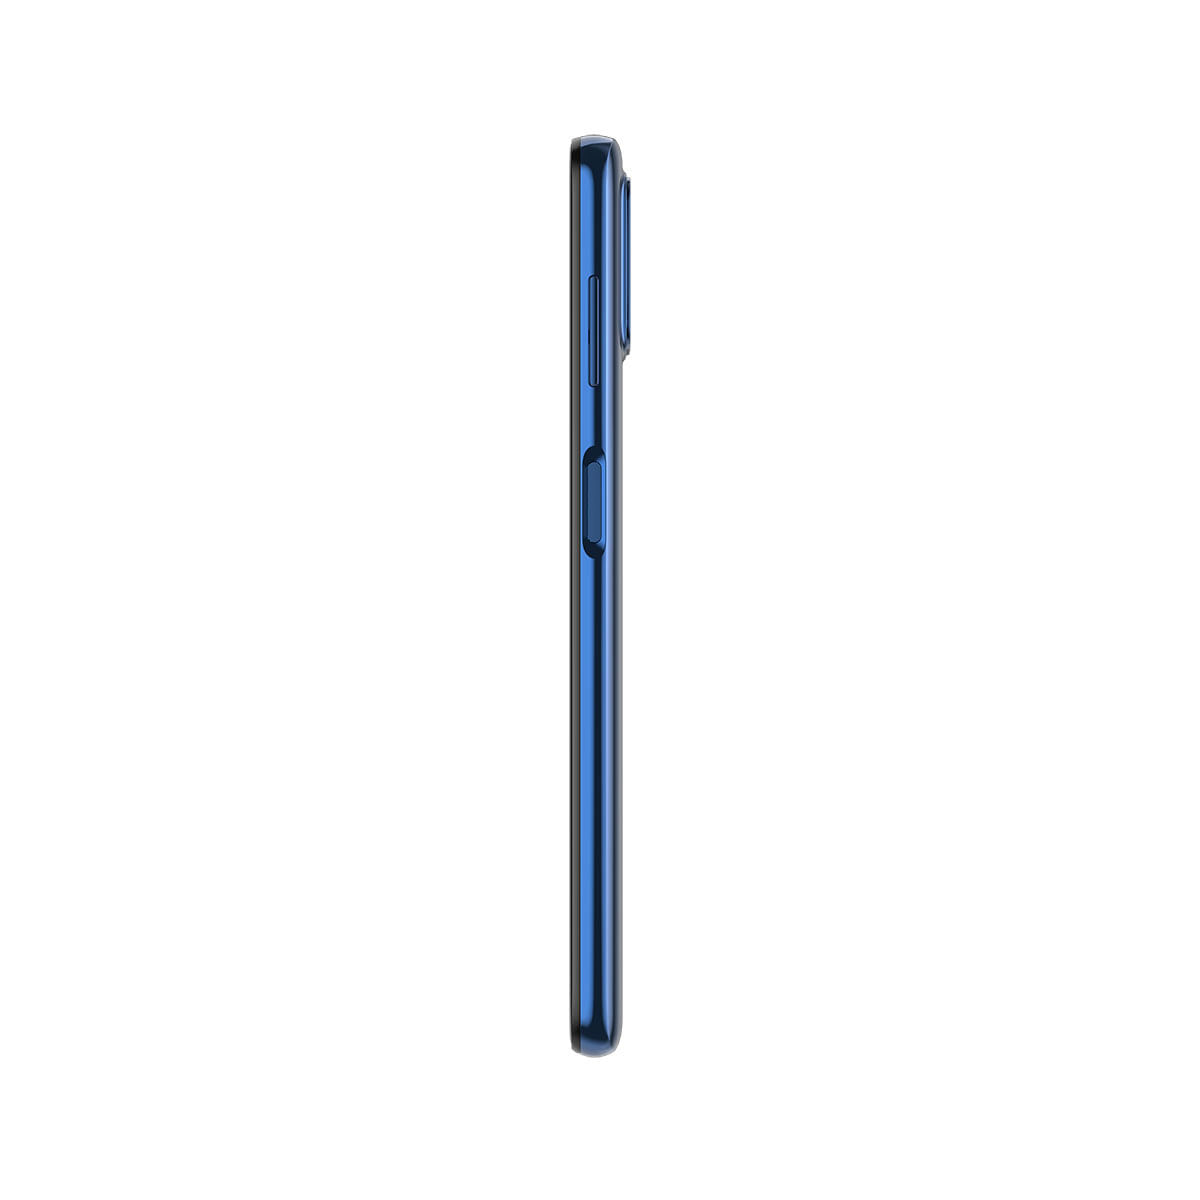 Smartphone Motorola Moto G9 Plus 128GB Azul Índigo 4G Tela 6.8" Câmera Quadrupla 64MP Perfil Direito